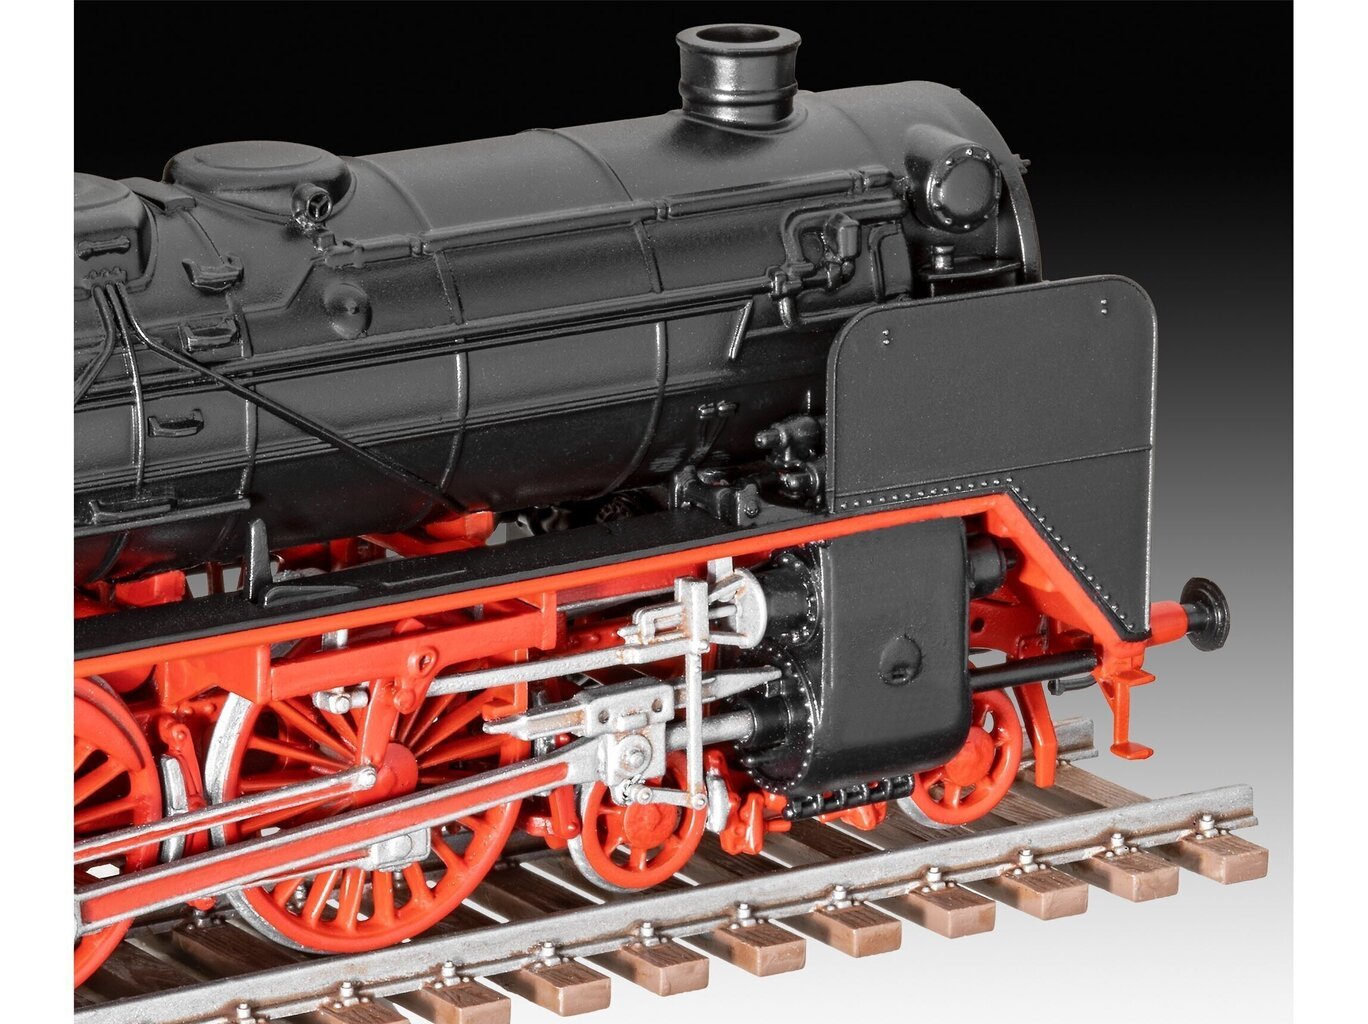 Revell mudelikomplekt - Express locomotive BR 02 & Tender 2'2'T30, 1/87, 02171 hind ja info | Klotsid ja konstruktorid | kaup24.ee